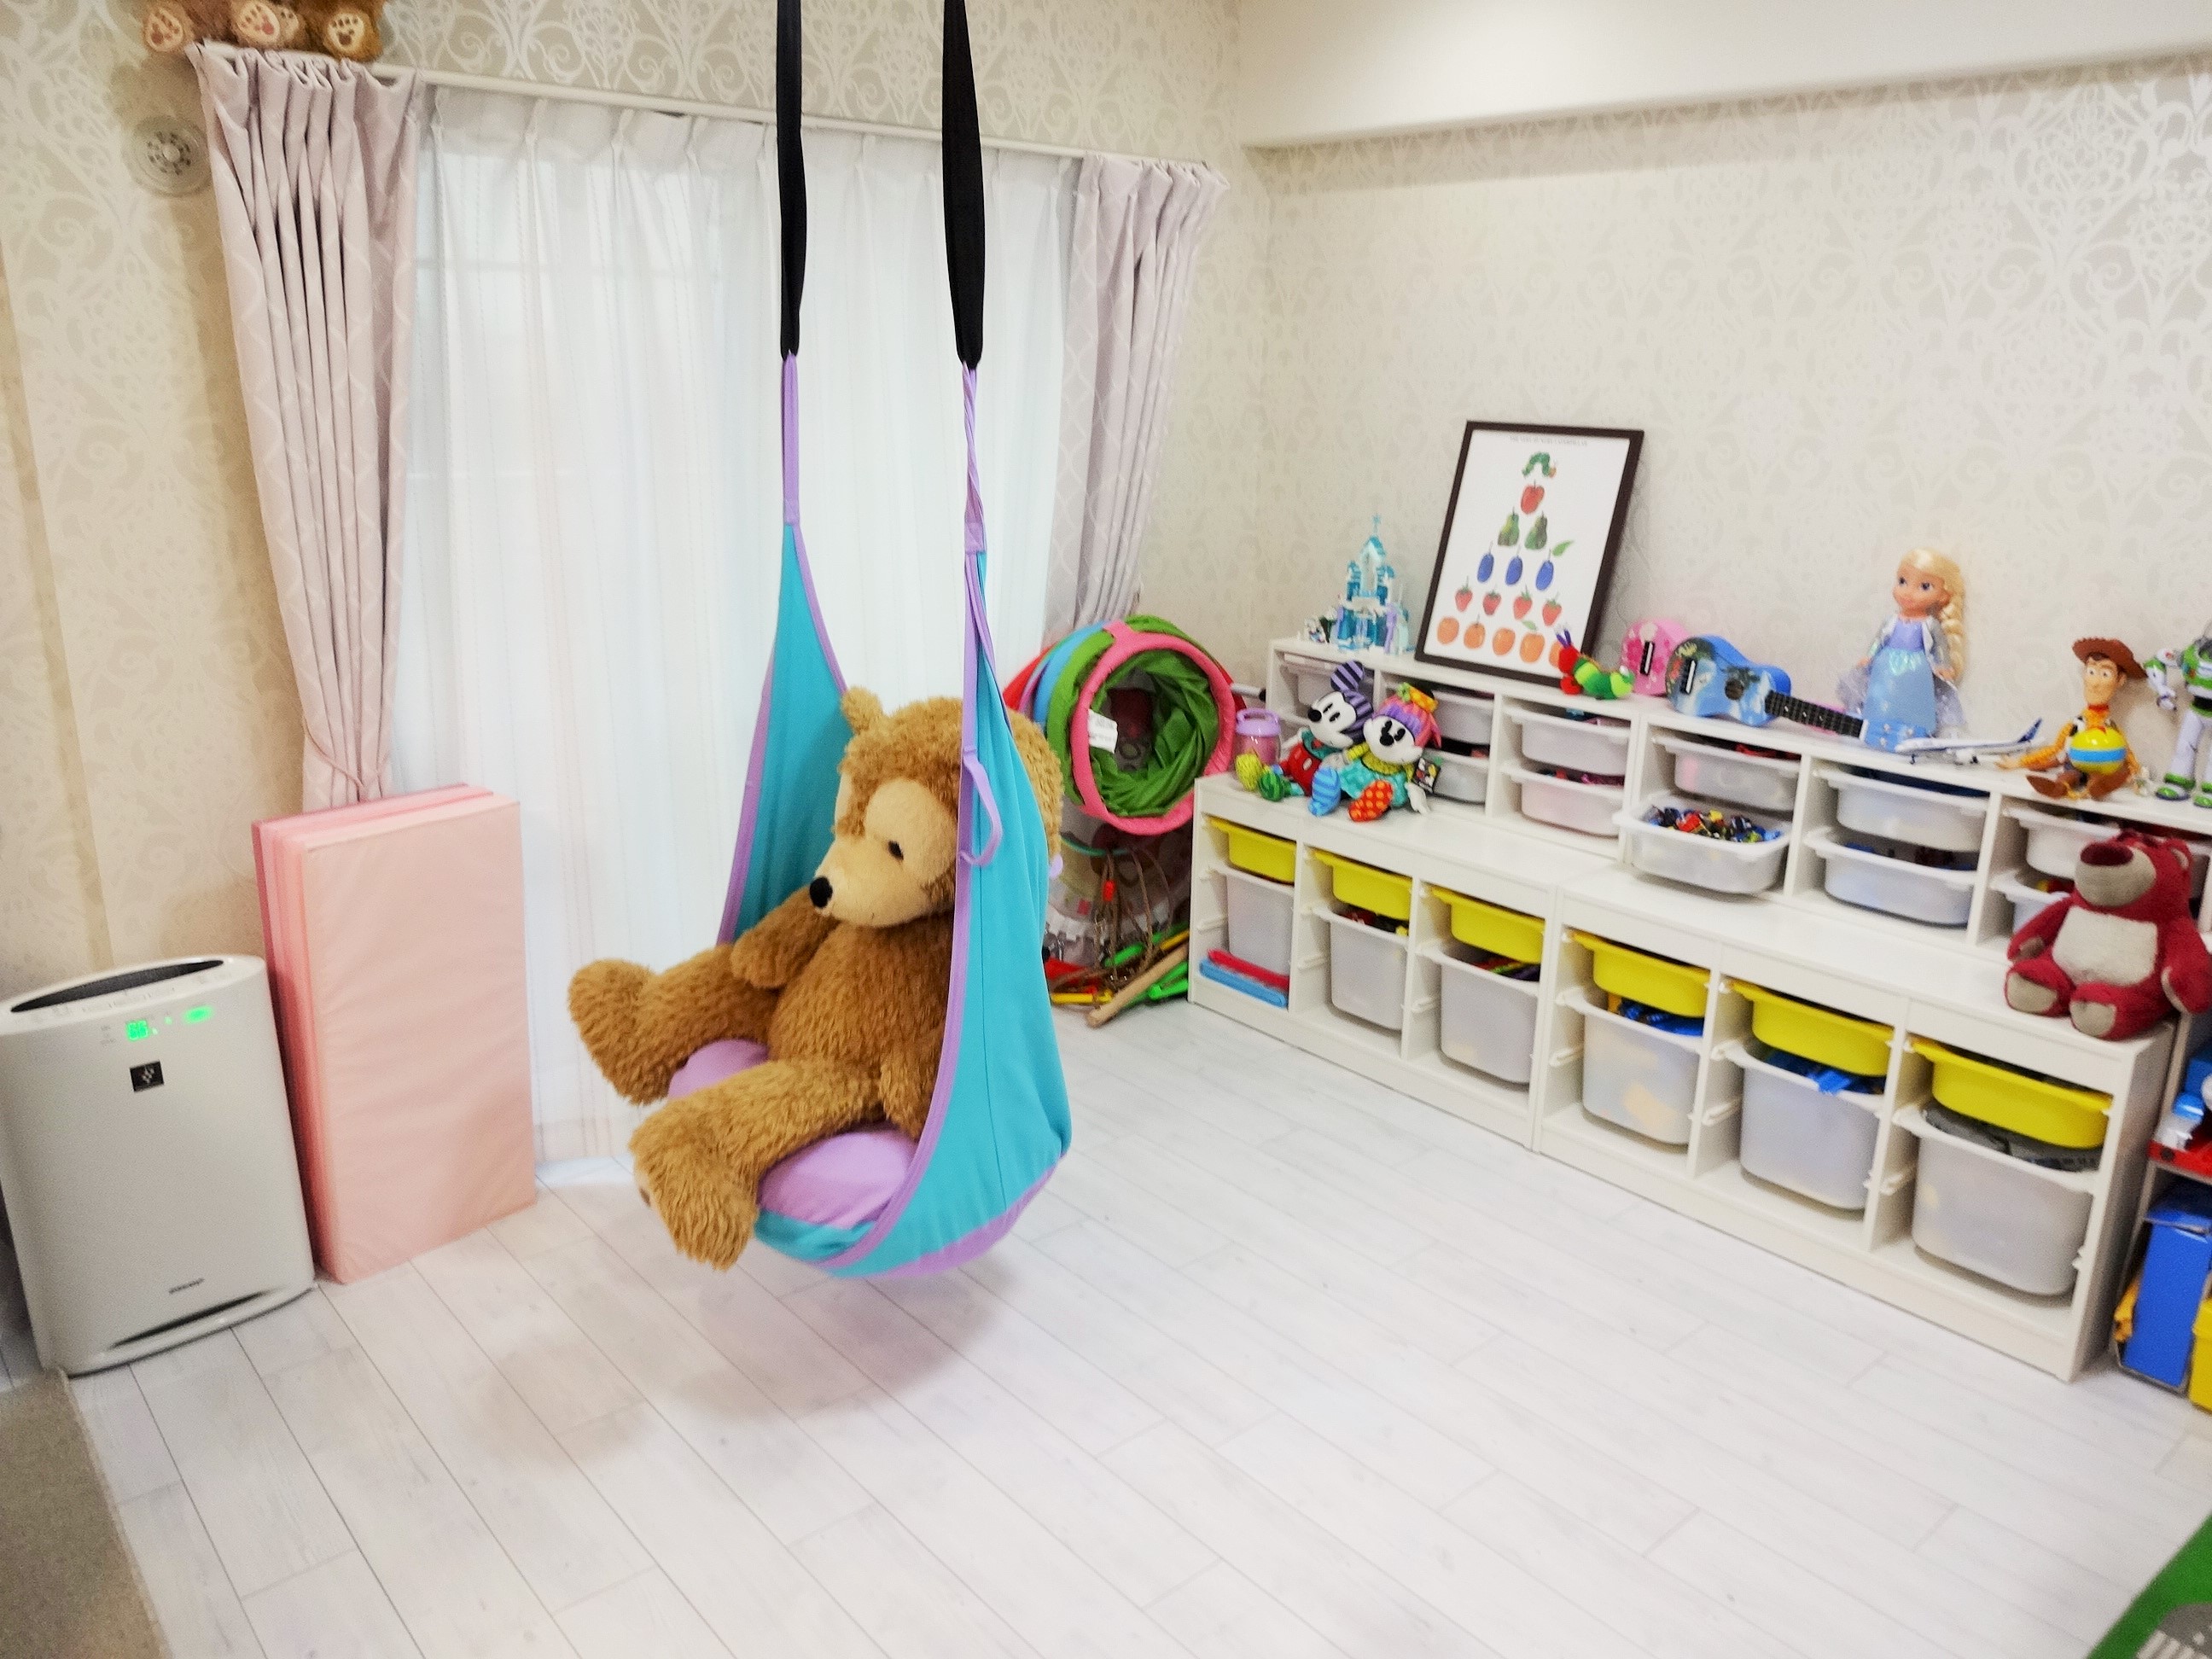 子供も大人も楽しめる お部屋にブランコのあるukiuki空間 マンション リフォーム事例 Lixilリフォームネット